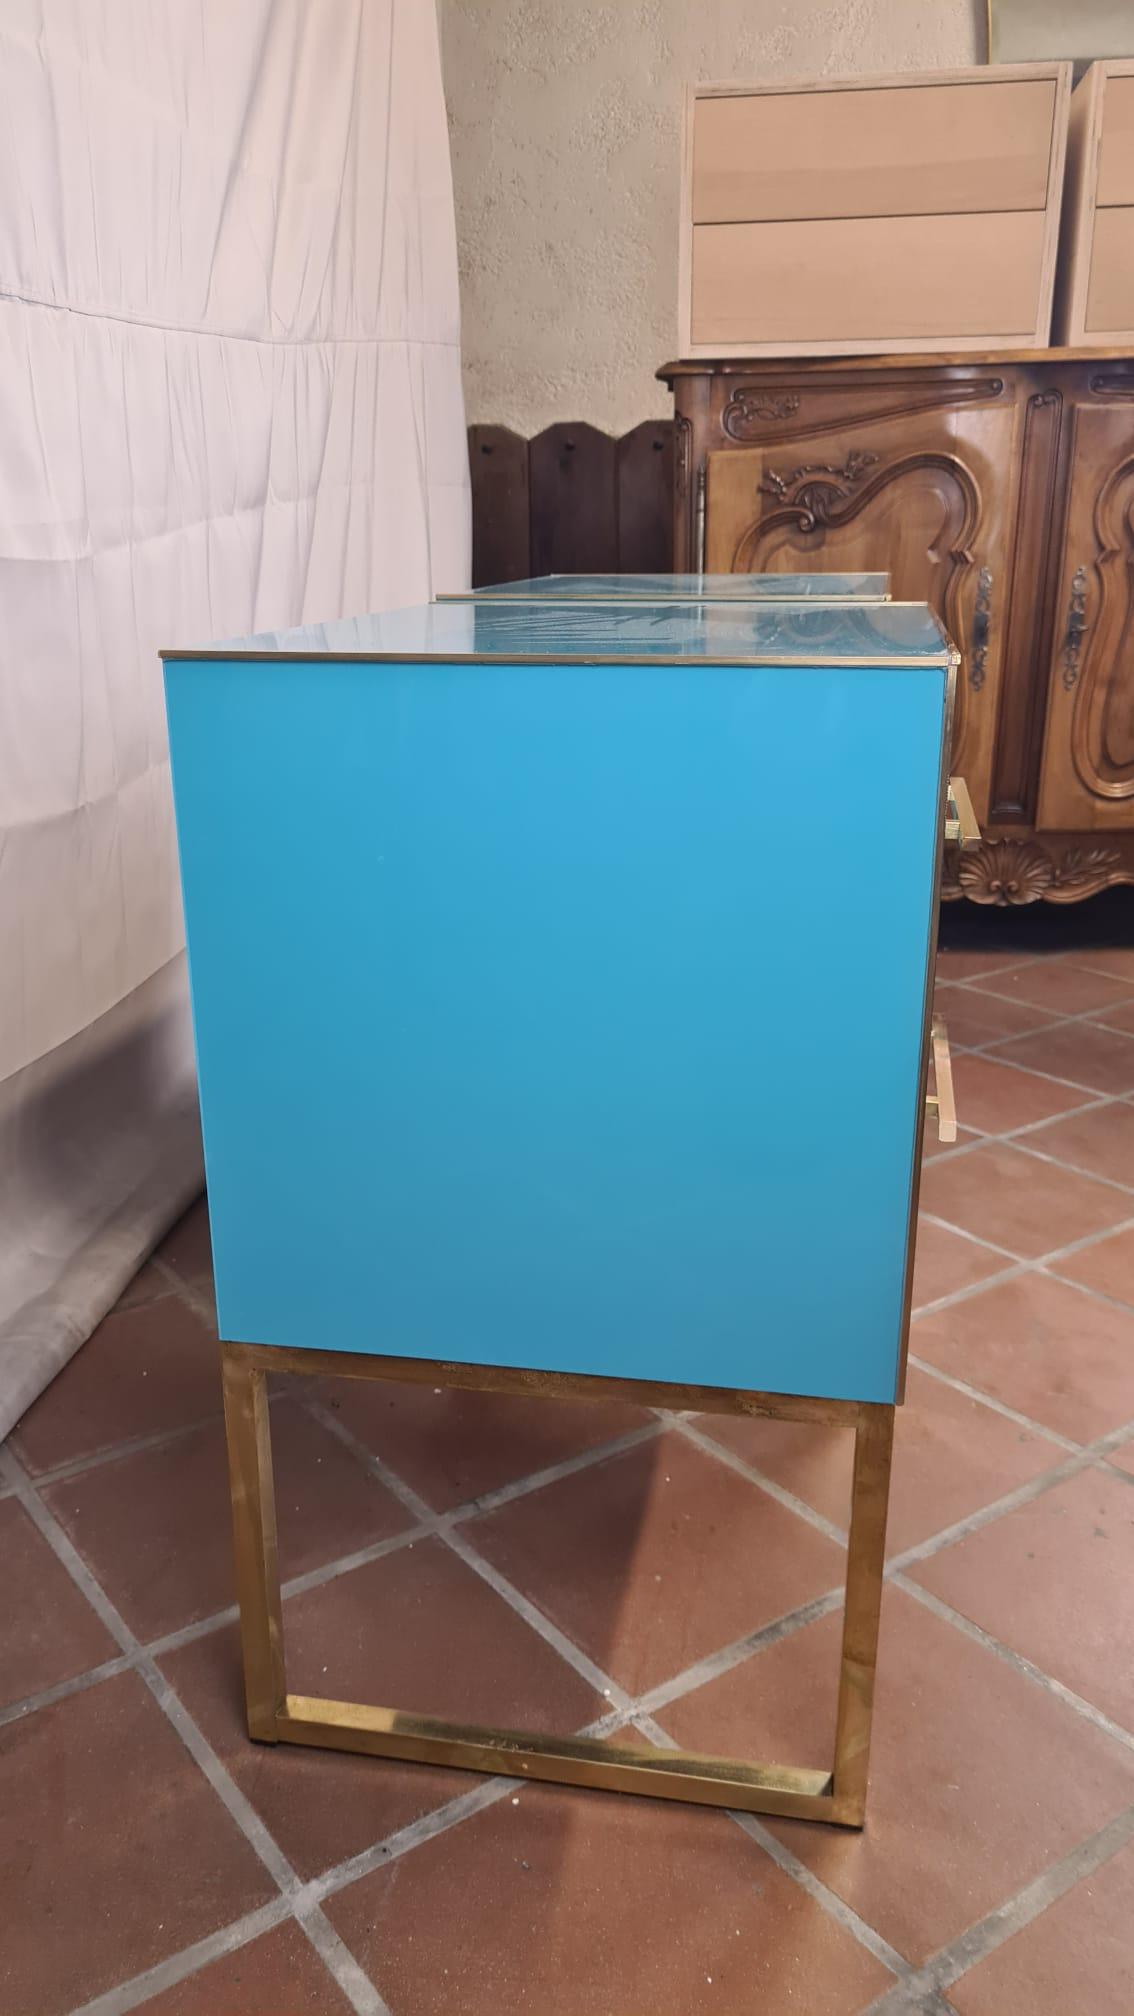 Découvrez le savoir-faire exquis de nos tables de chevet en verre Murano bleu clair, qui témoignent de l'élégance intemporelle du design italien. 

Fabriquées à la main en 2022, ces pièces uniques allient l'art traditionnel du verre de Murano au